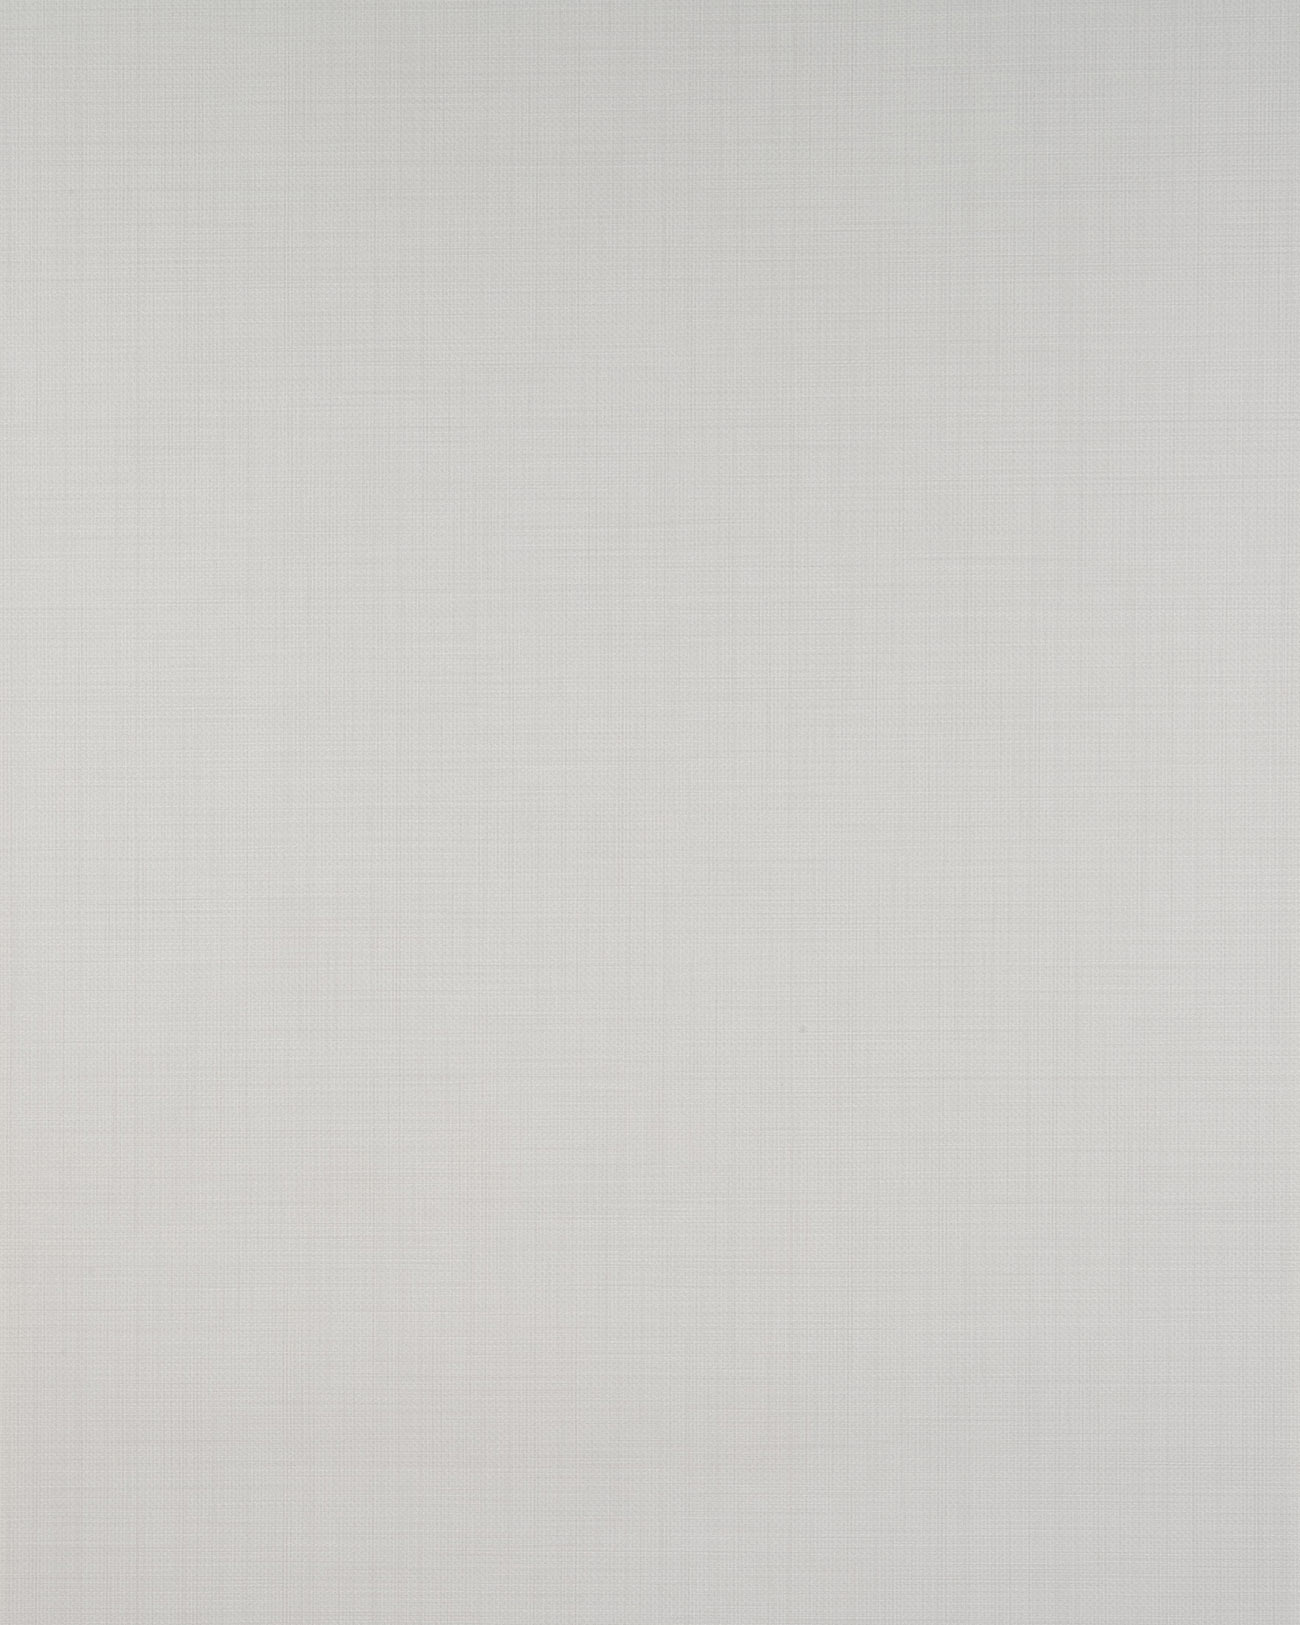 Unicolor wallpaper Profhome BV919090-DI hot embossed non-woven wallpaper textured unicolor matt white 5.33 m2